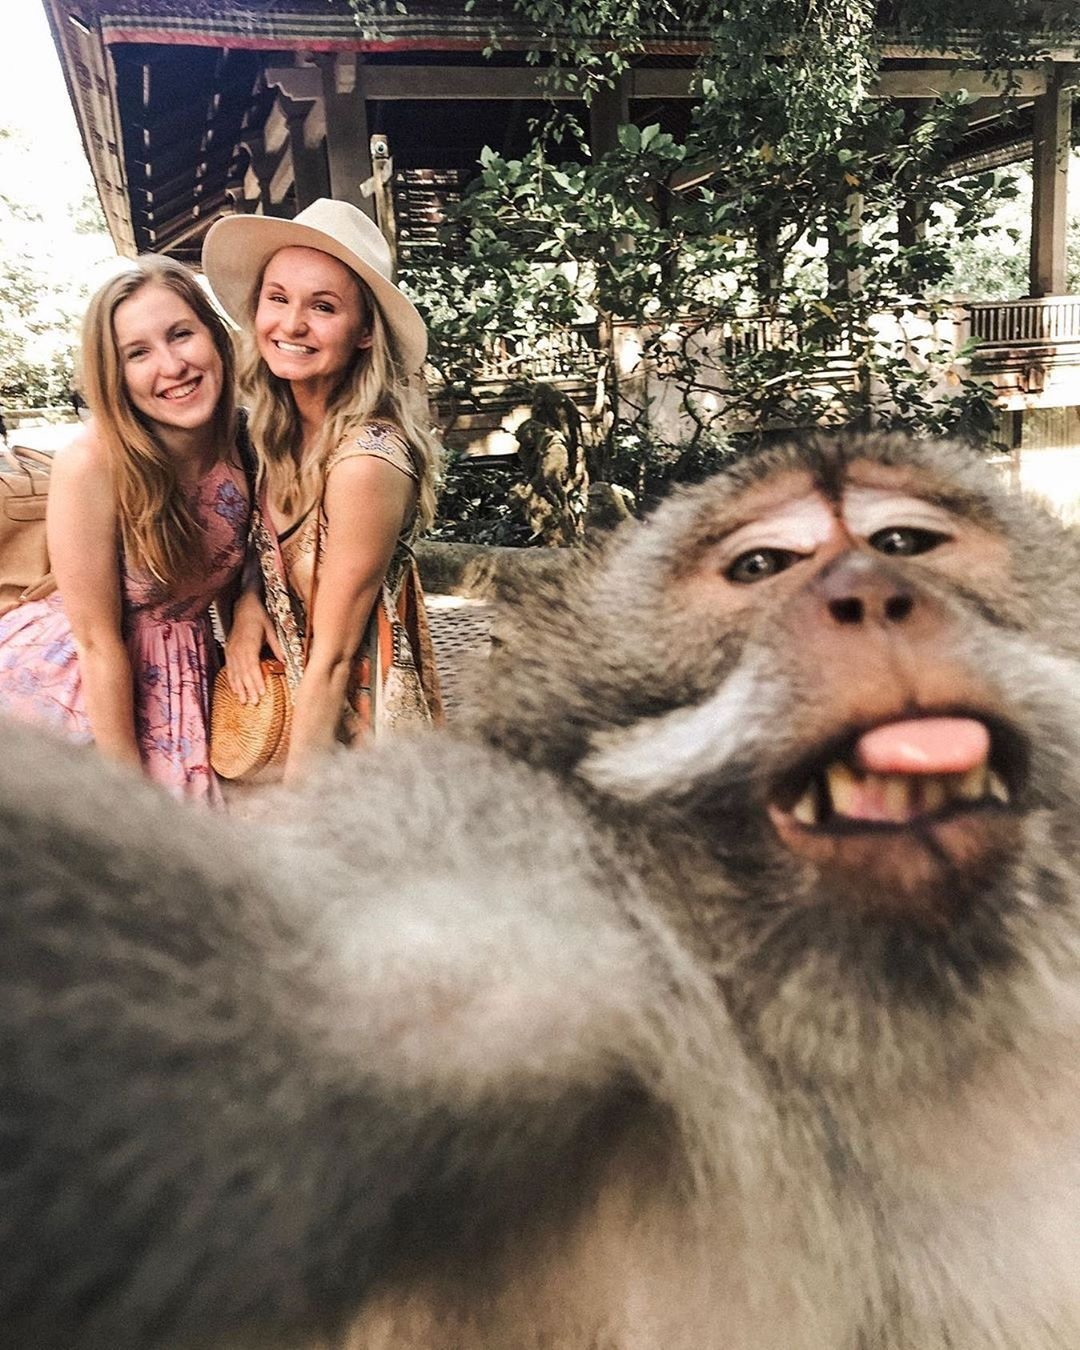 Trik Selfie Monyet di Bali